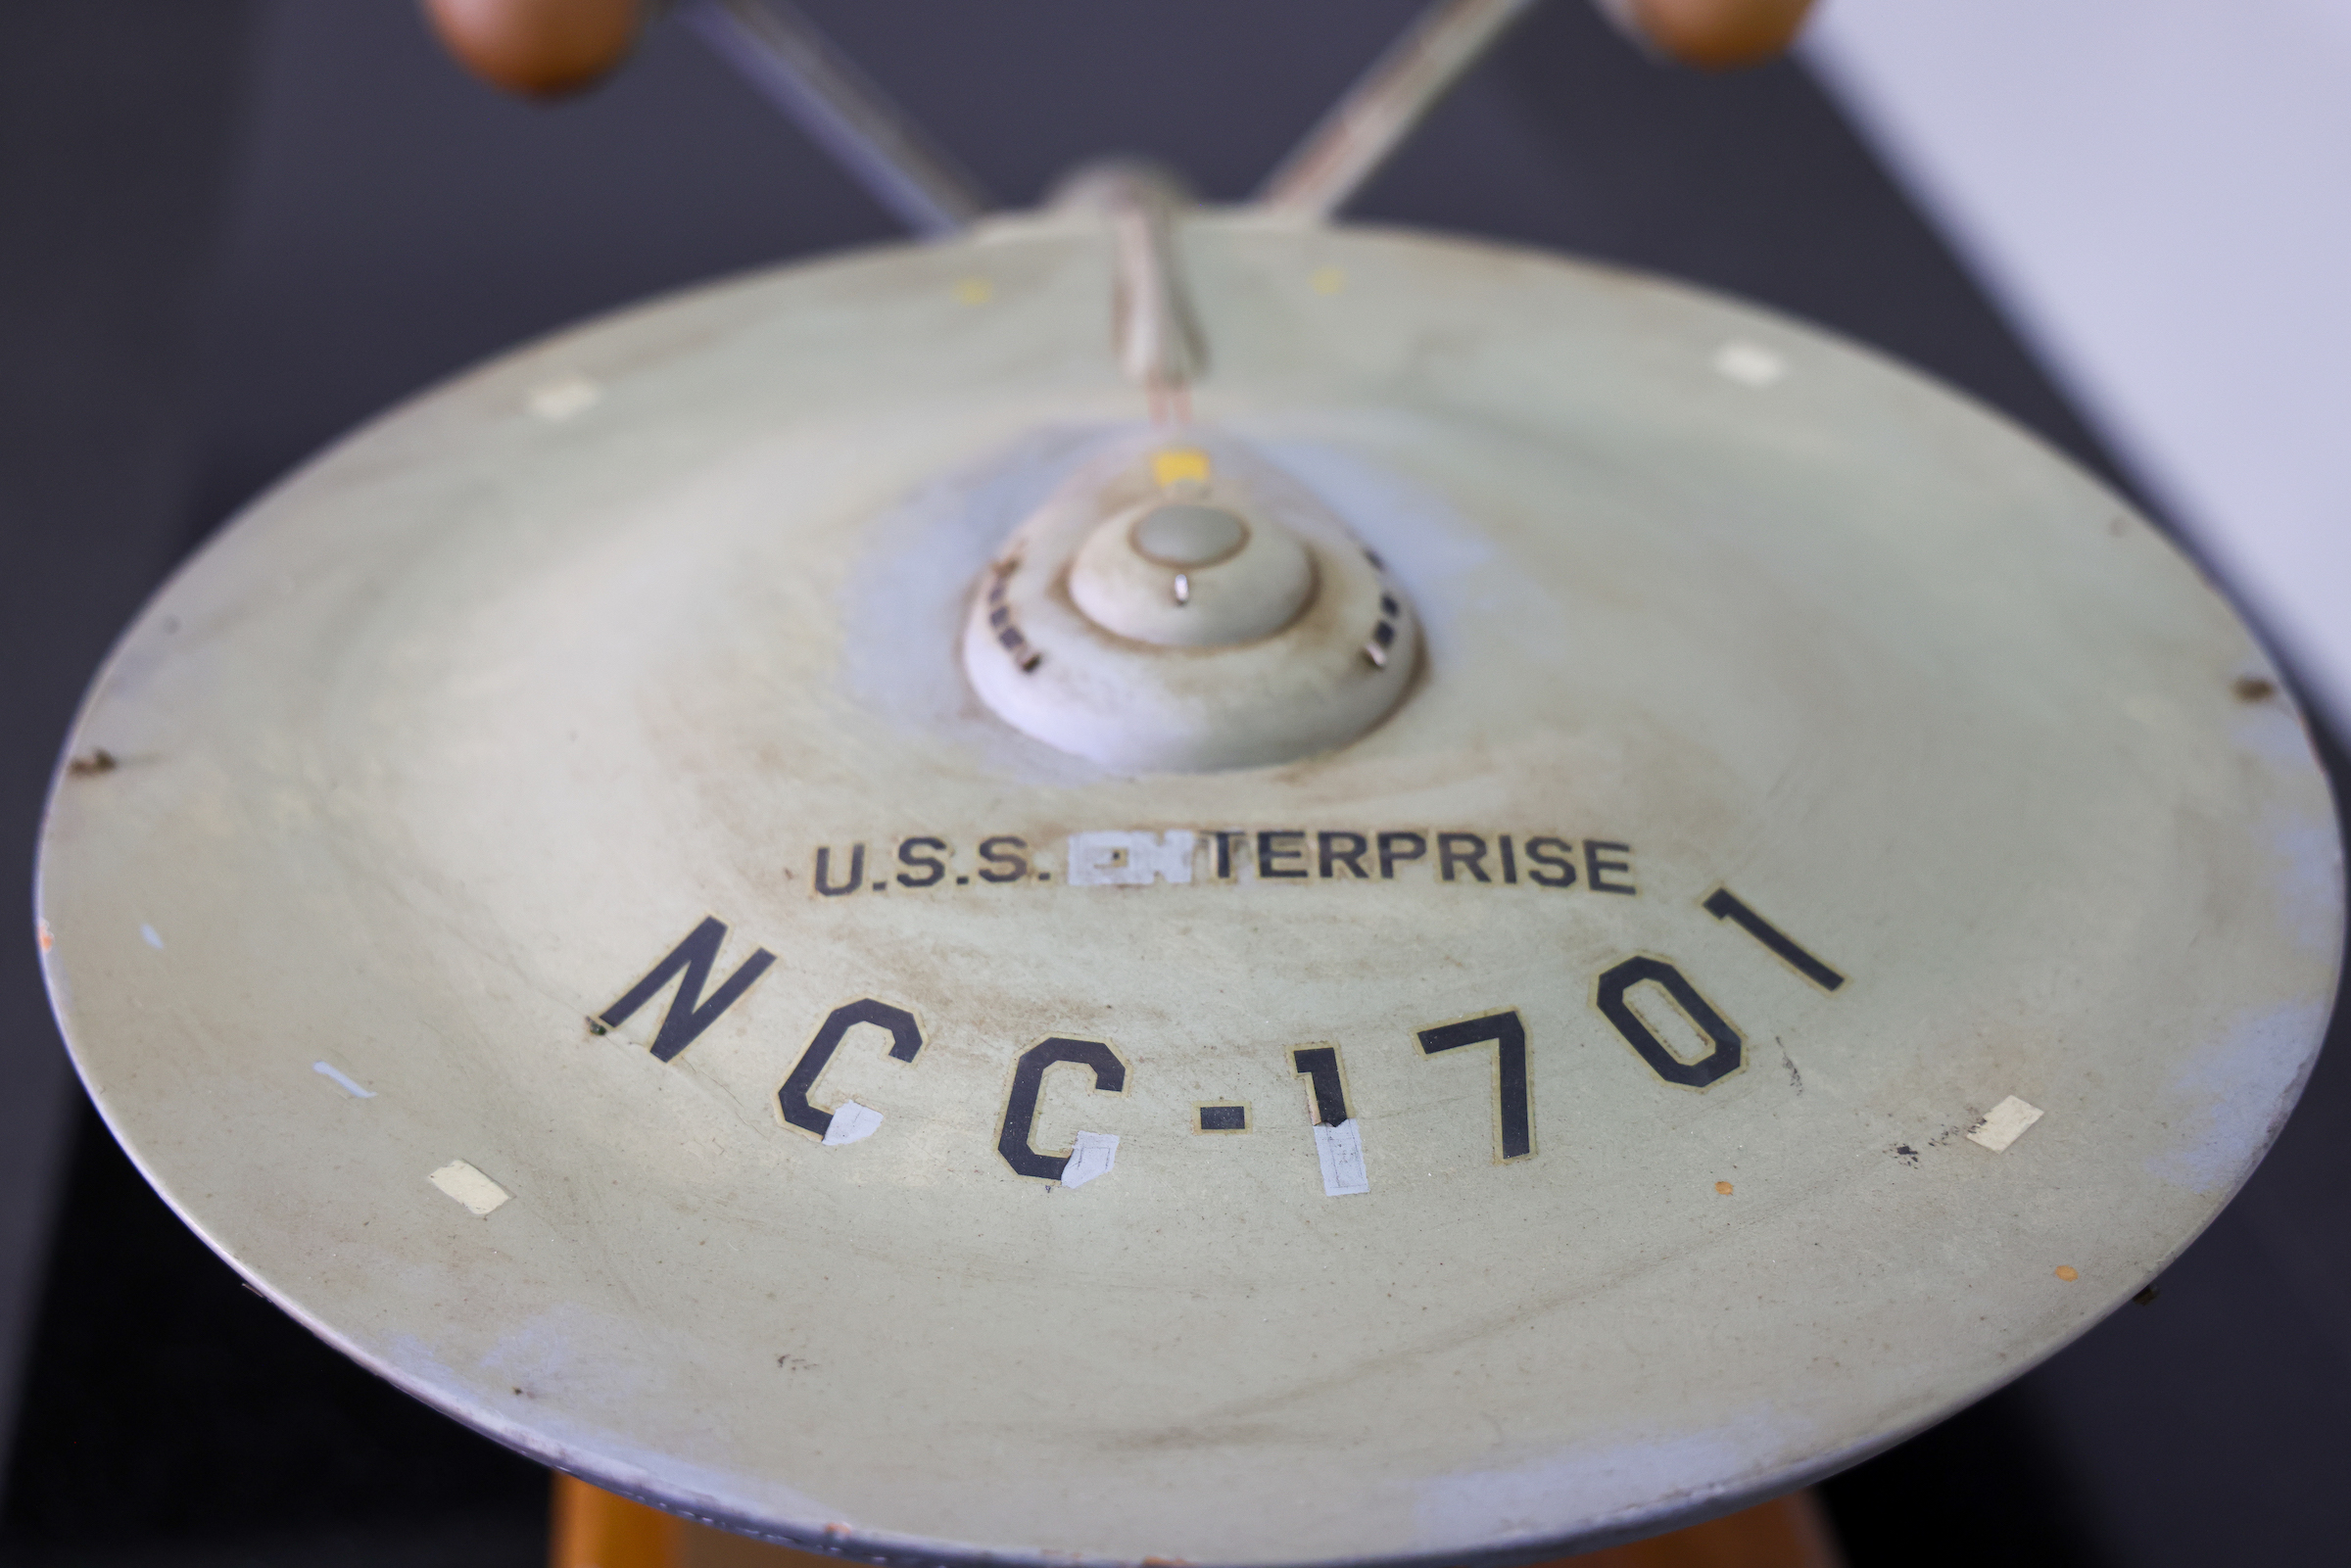 USS Enterprise from Star Trek